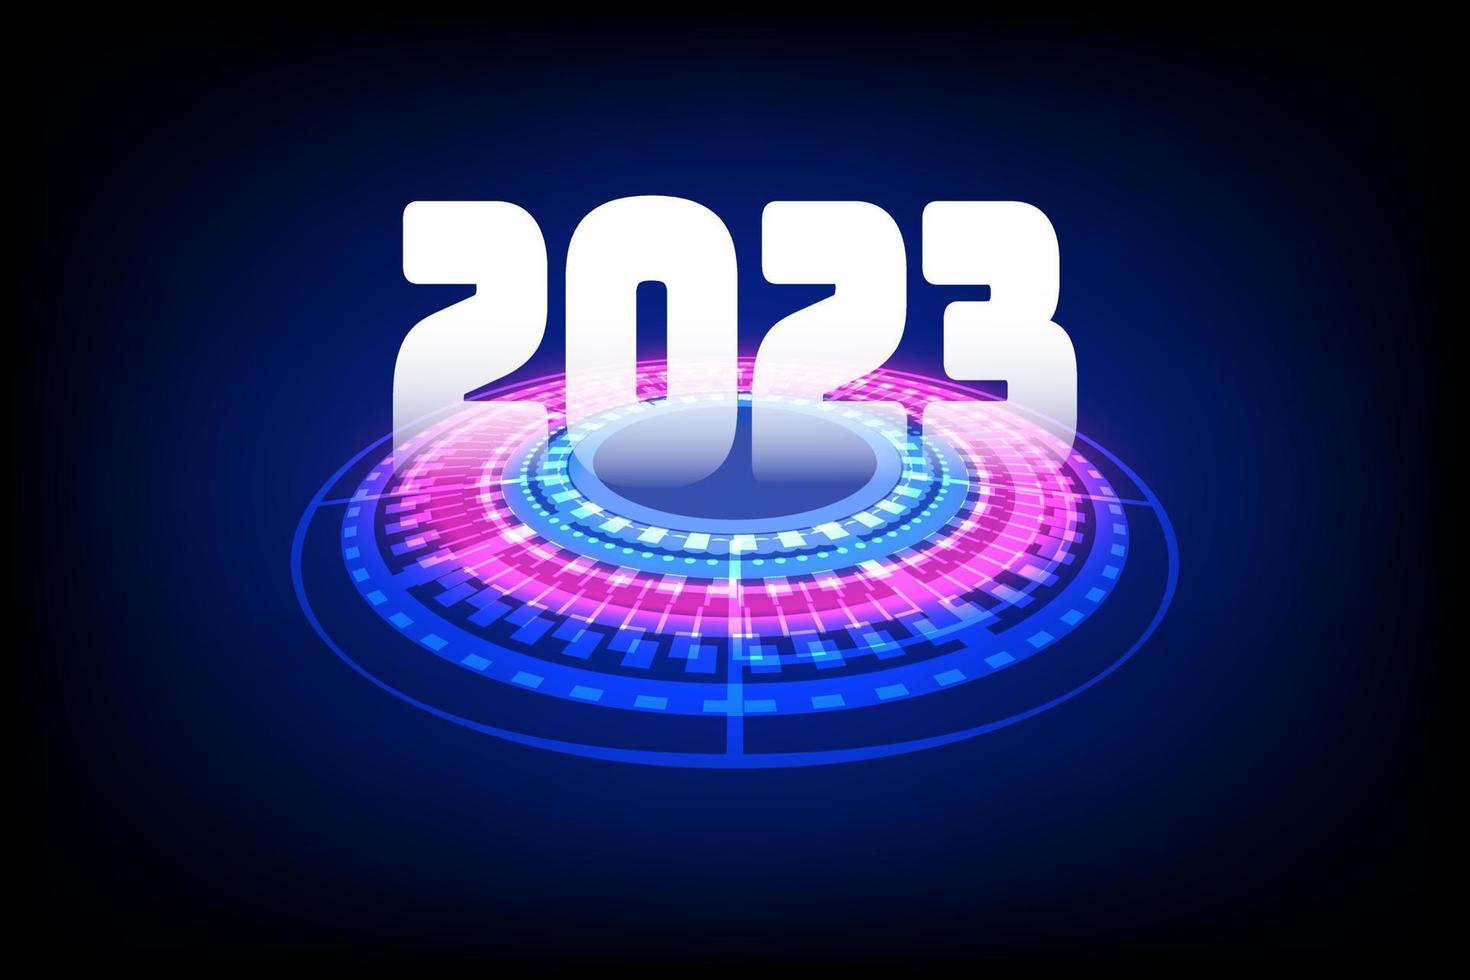 conceito de feliz ano novo. metálico de 2023 nos círculos de alta tecnologia vermelho e azul, ciberespaço e inovação digital. comunicação futurista. interface de usuário de ficção científica. vetor